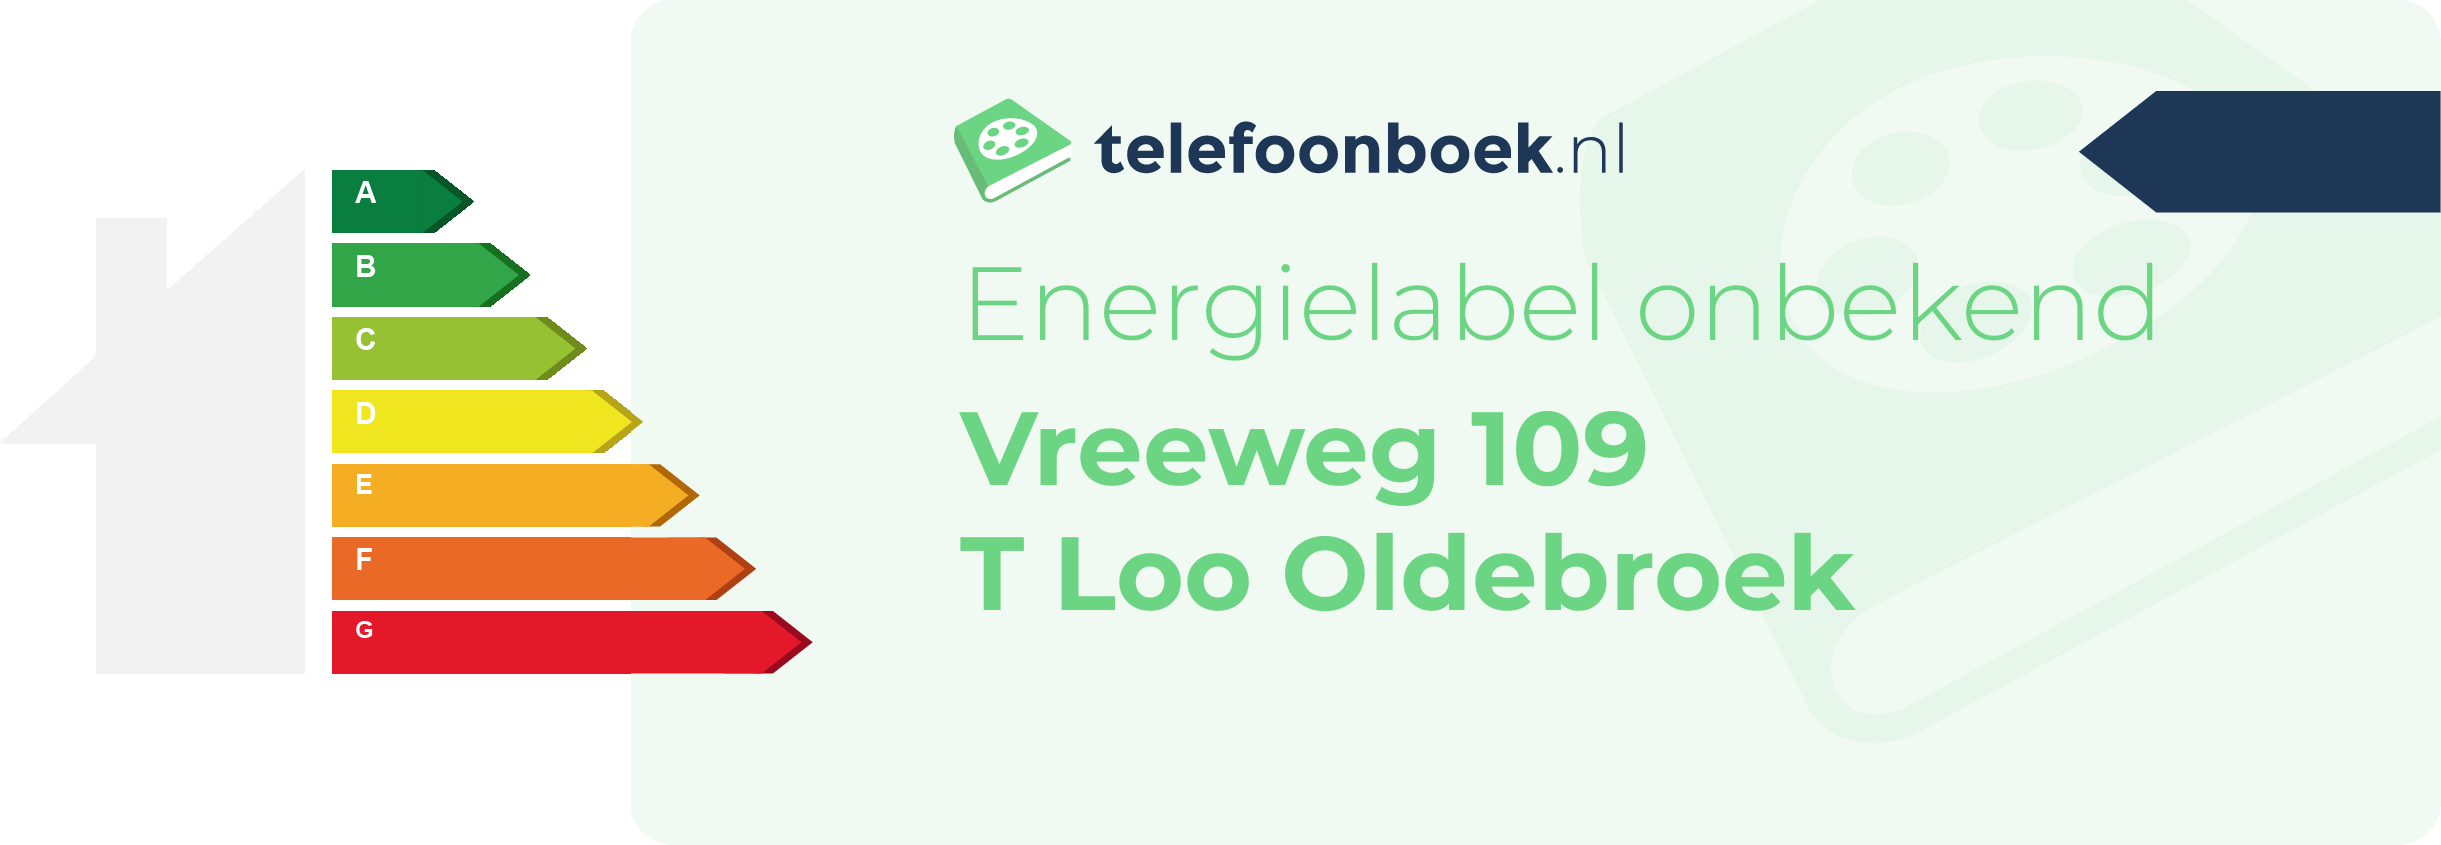 Energielabel Vreeweg 109 T Loo Oldebroek